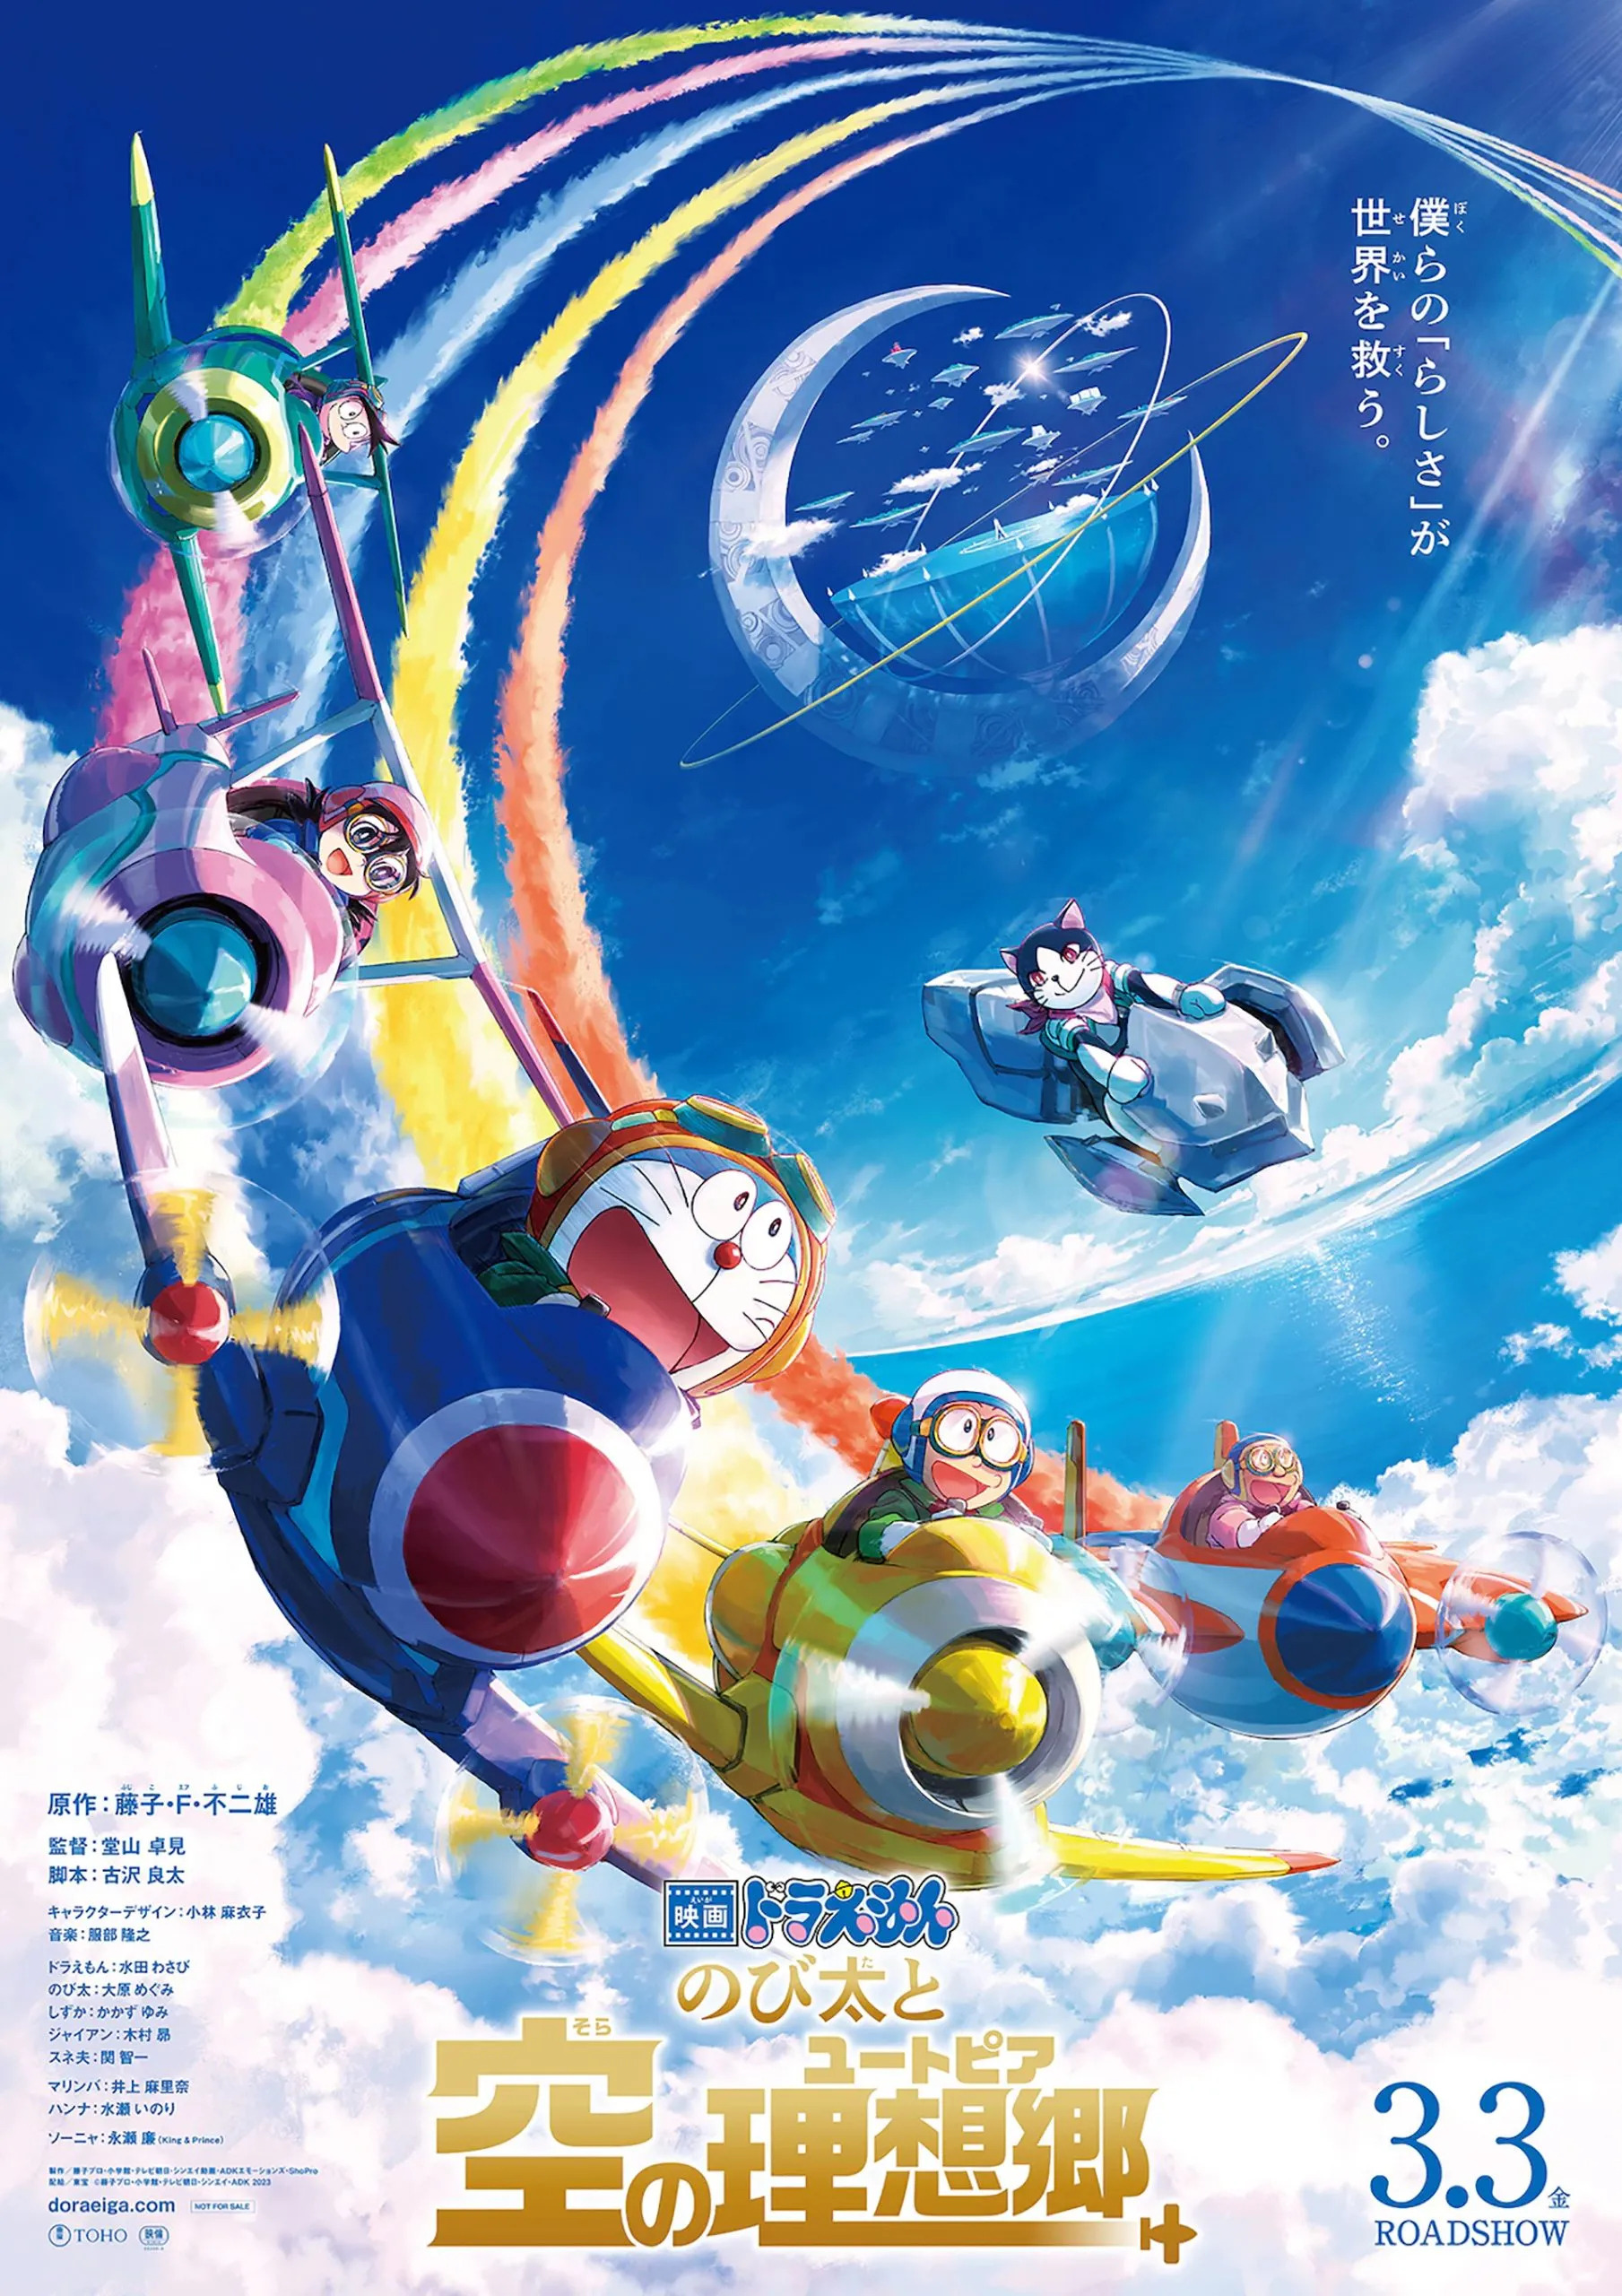 Mega Sized Movie Poster Image for Eiga Doraemon: Nobita to Sora no Utopia (#2 of 2)